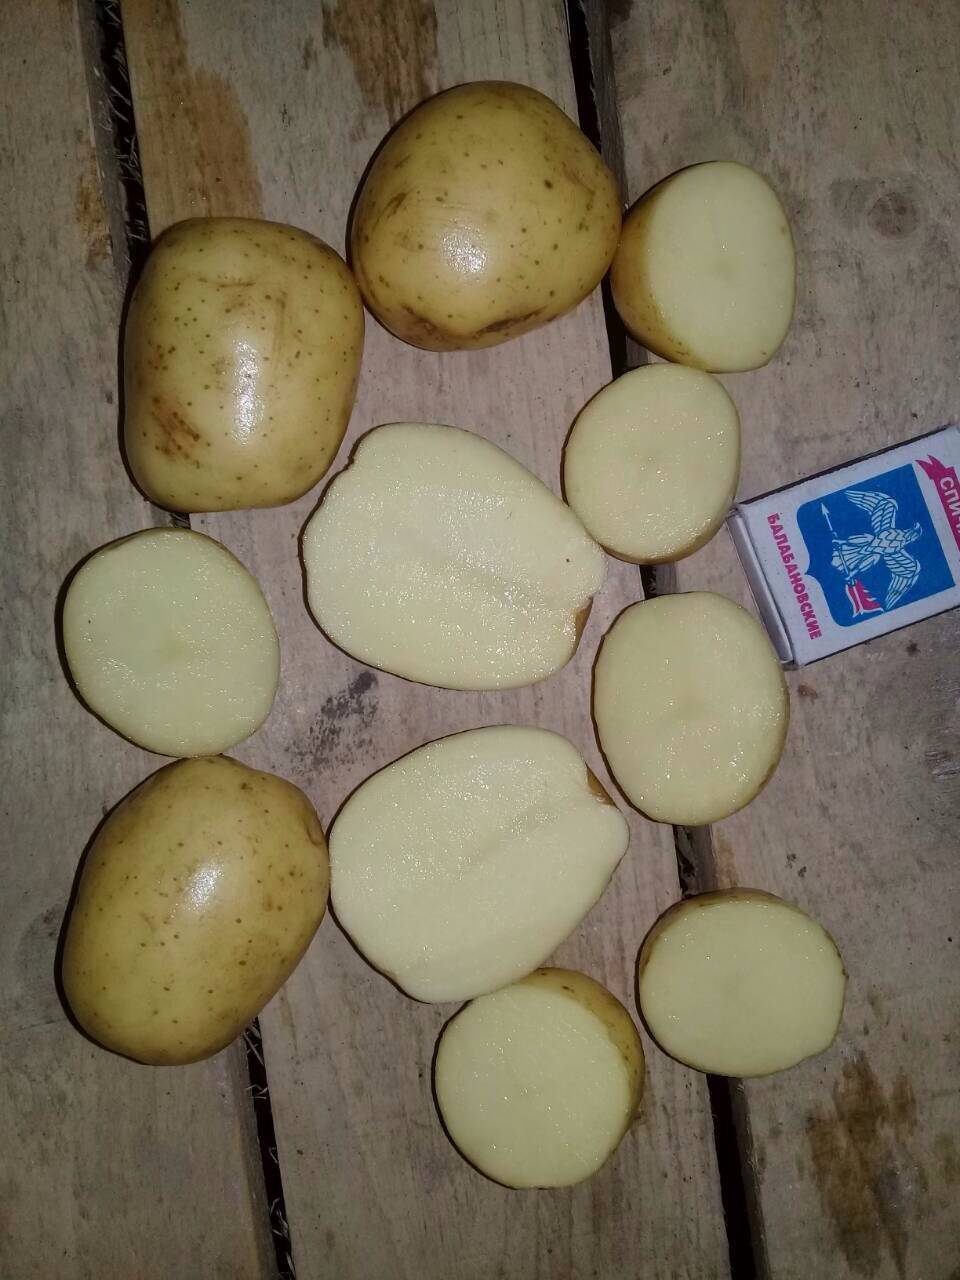 картофель коломбо характеристика описание сорта фото